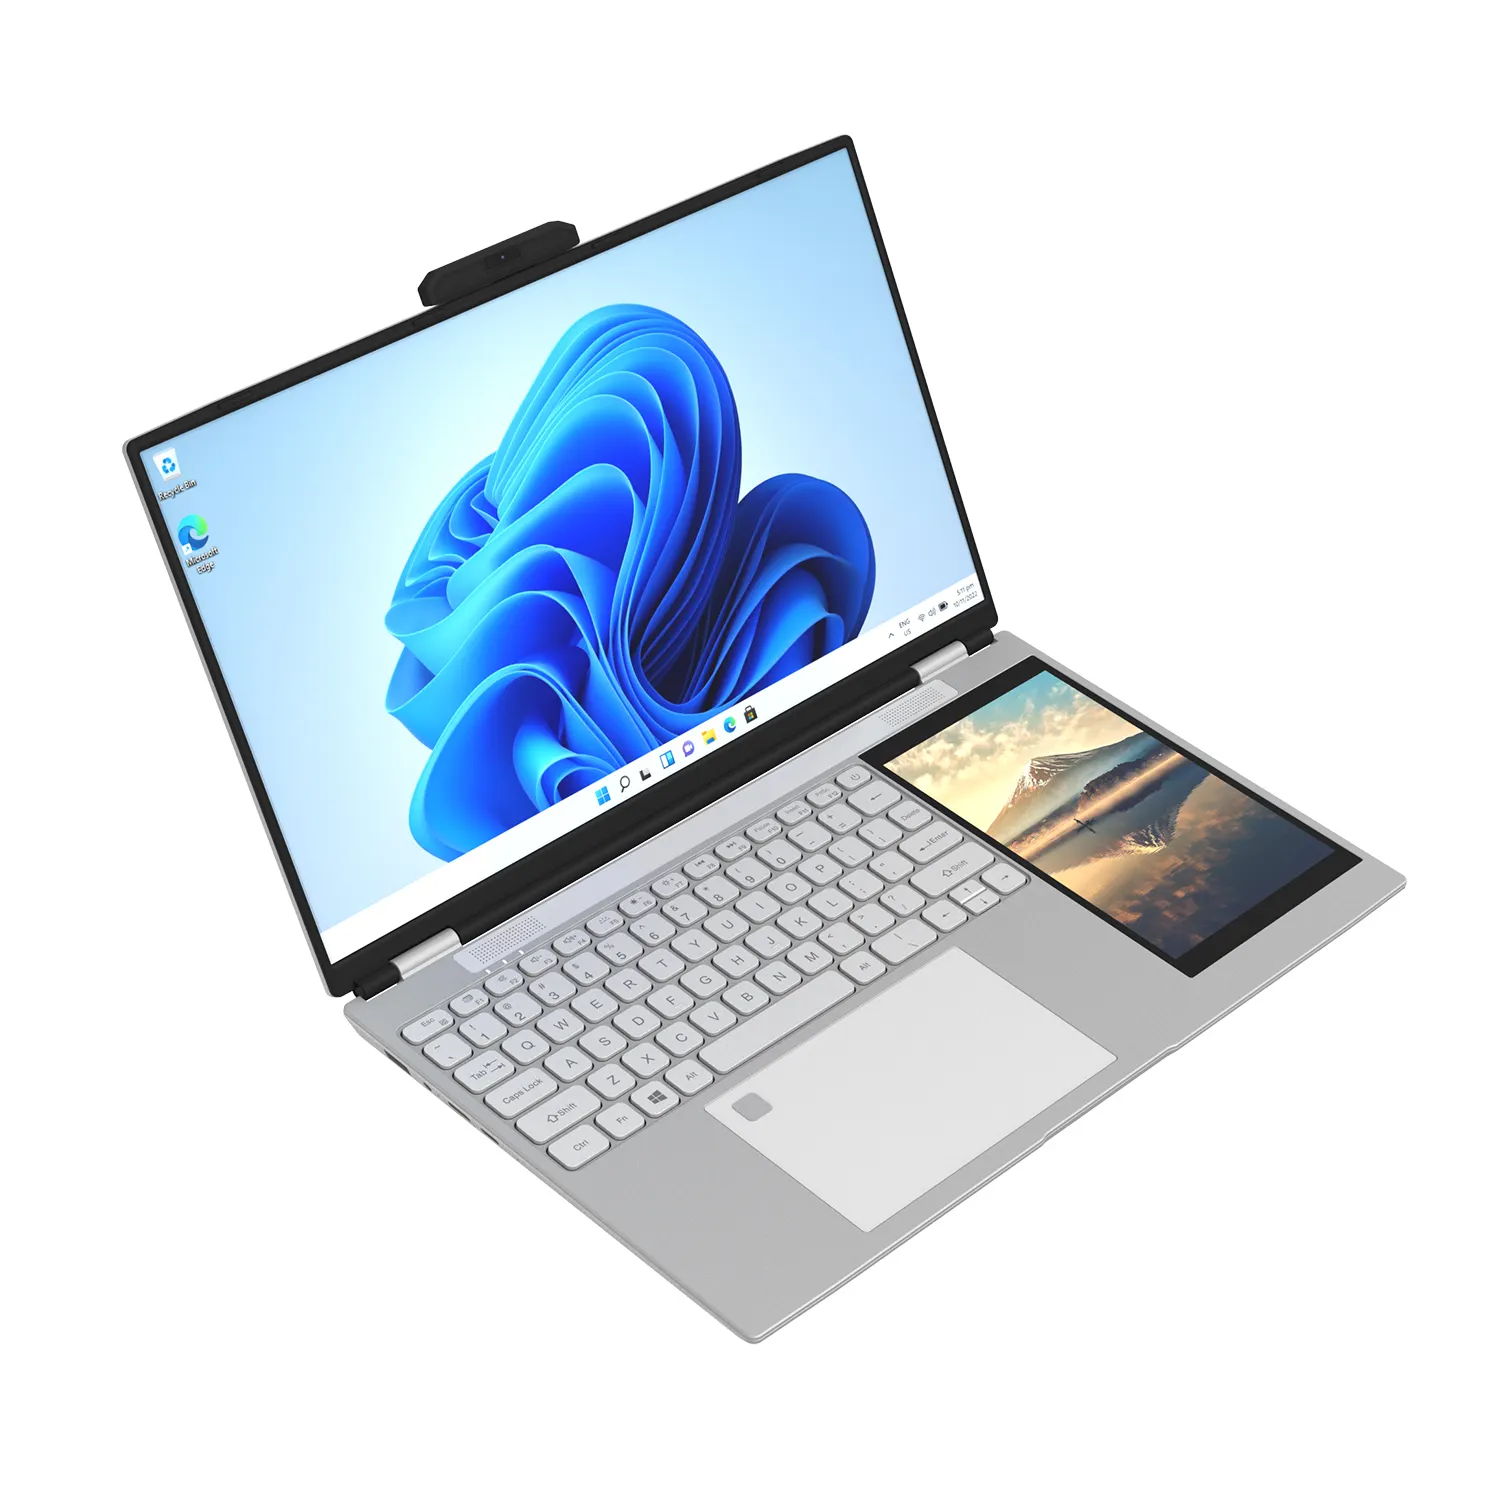 Intel Core คอมพิวเตอร์แล็ปท็อปหน้าจอคู่ขนาด15.6นิ้ว + 7นิ้วสำหรับใช้ในบ้าน N95อย่างรวดเร็ว